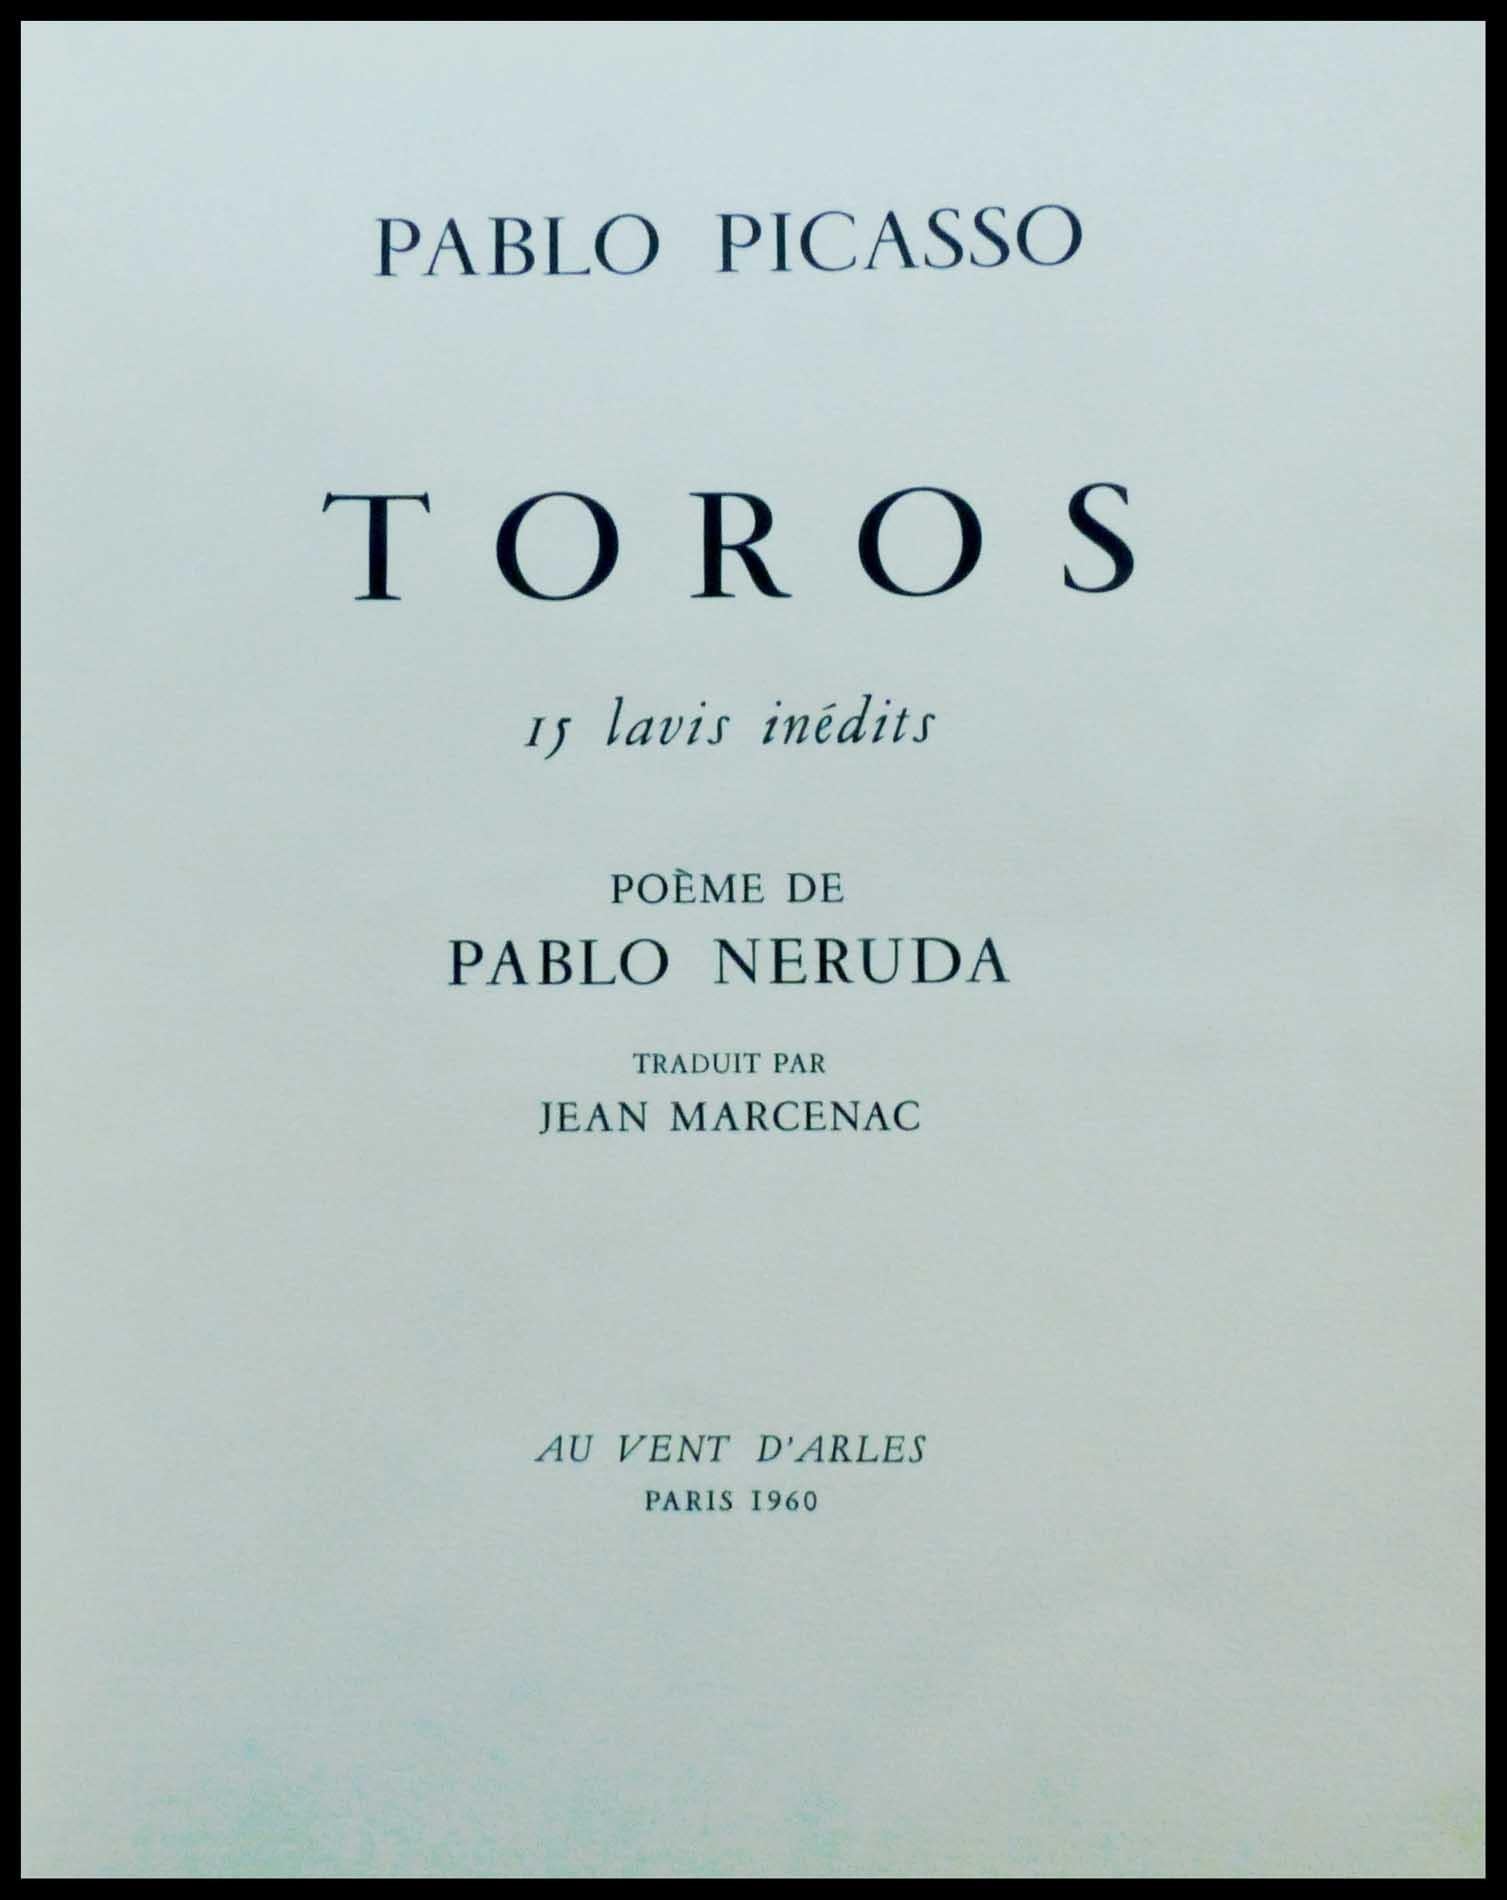 Pablo PICASSO
Los Toros - 1960
15 pochoirs originaux 
pochoir réalisé sur vélin d'arches par Daniel Jacomet
Imprimé par Mourlot

14 pochoirs signés et datés dans la planche
1 pochoir signé par l'artiste 
Dimension : 38 x 28 centimètres
Très bon